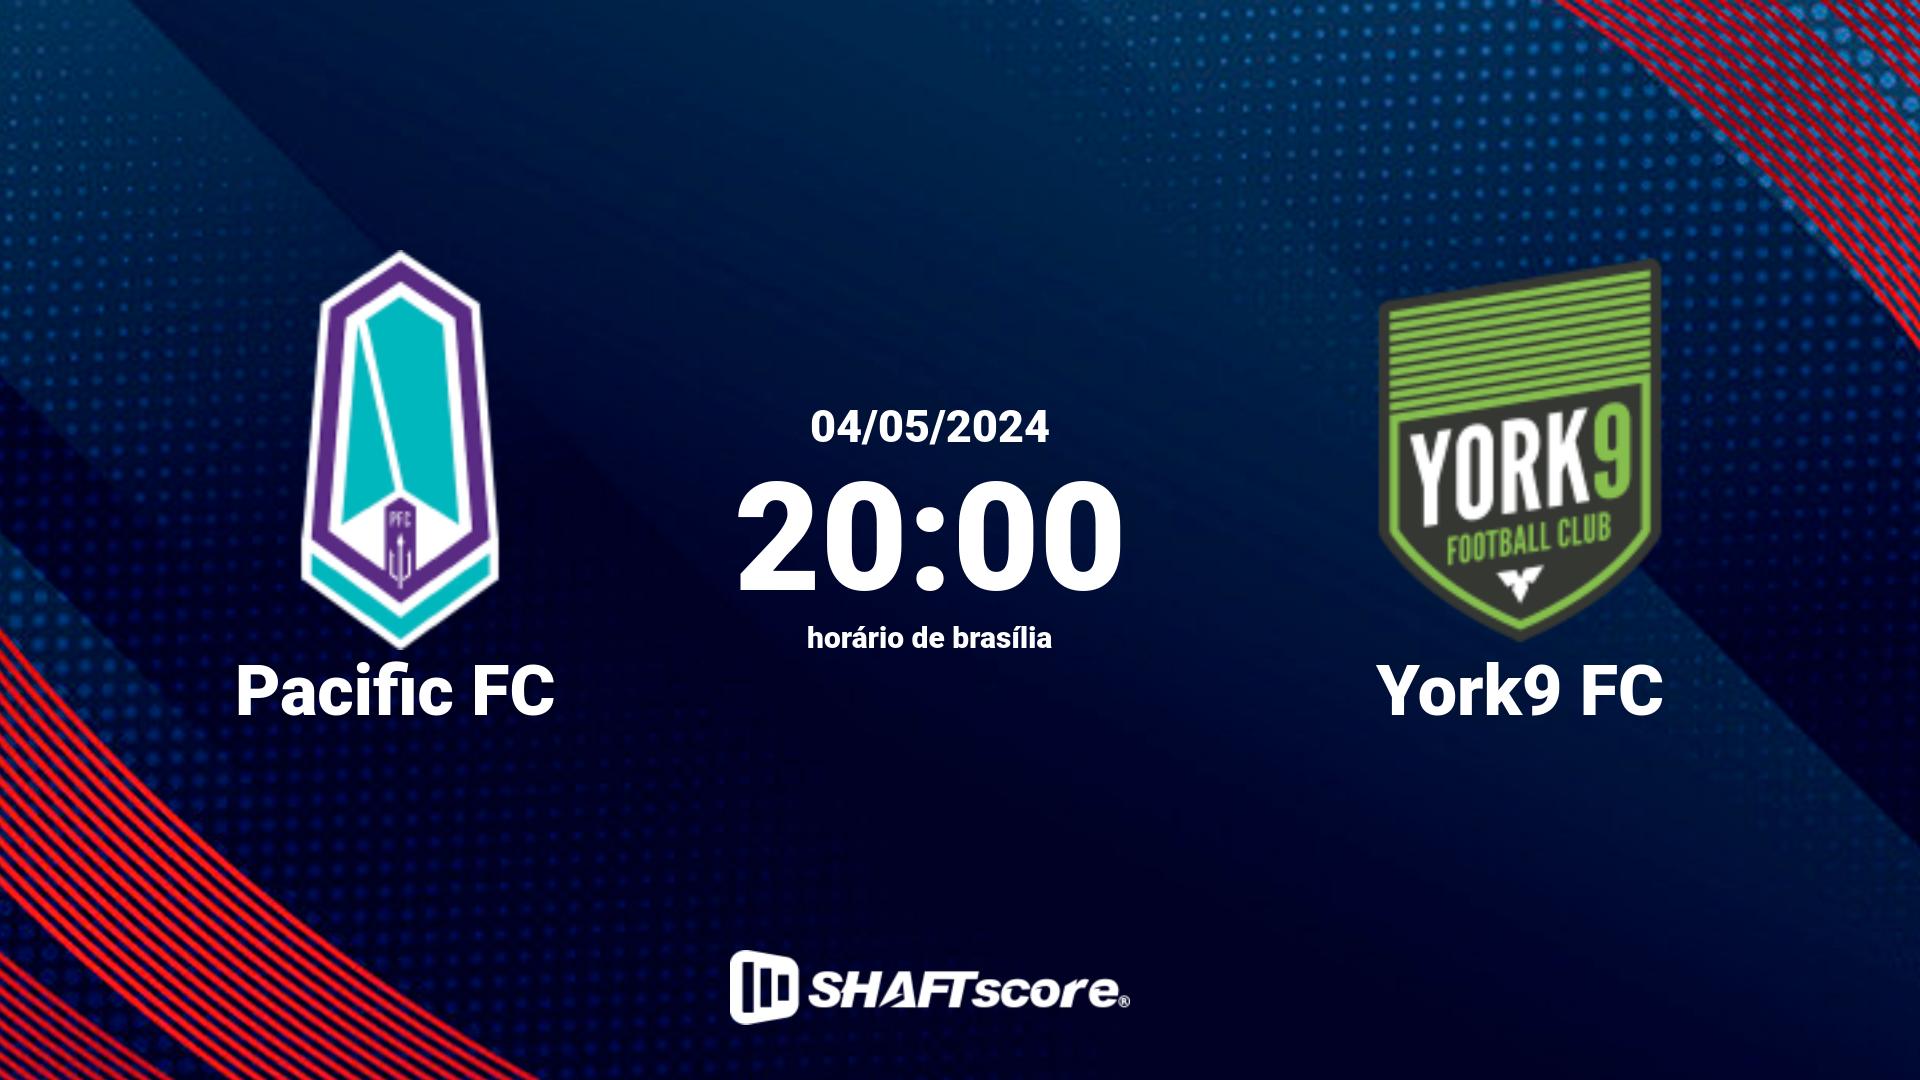 Estatísticas do jogo Pacific FC vs York9 FC 04.05 20:00